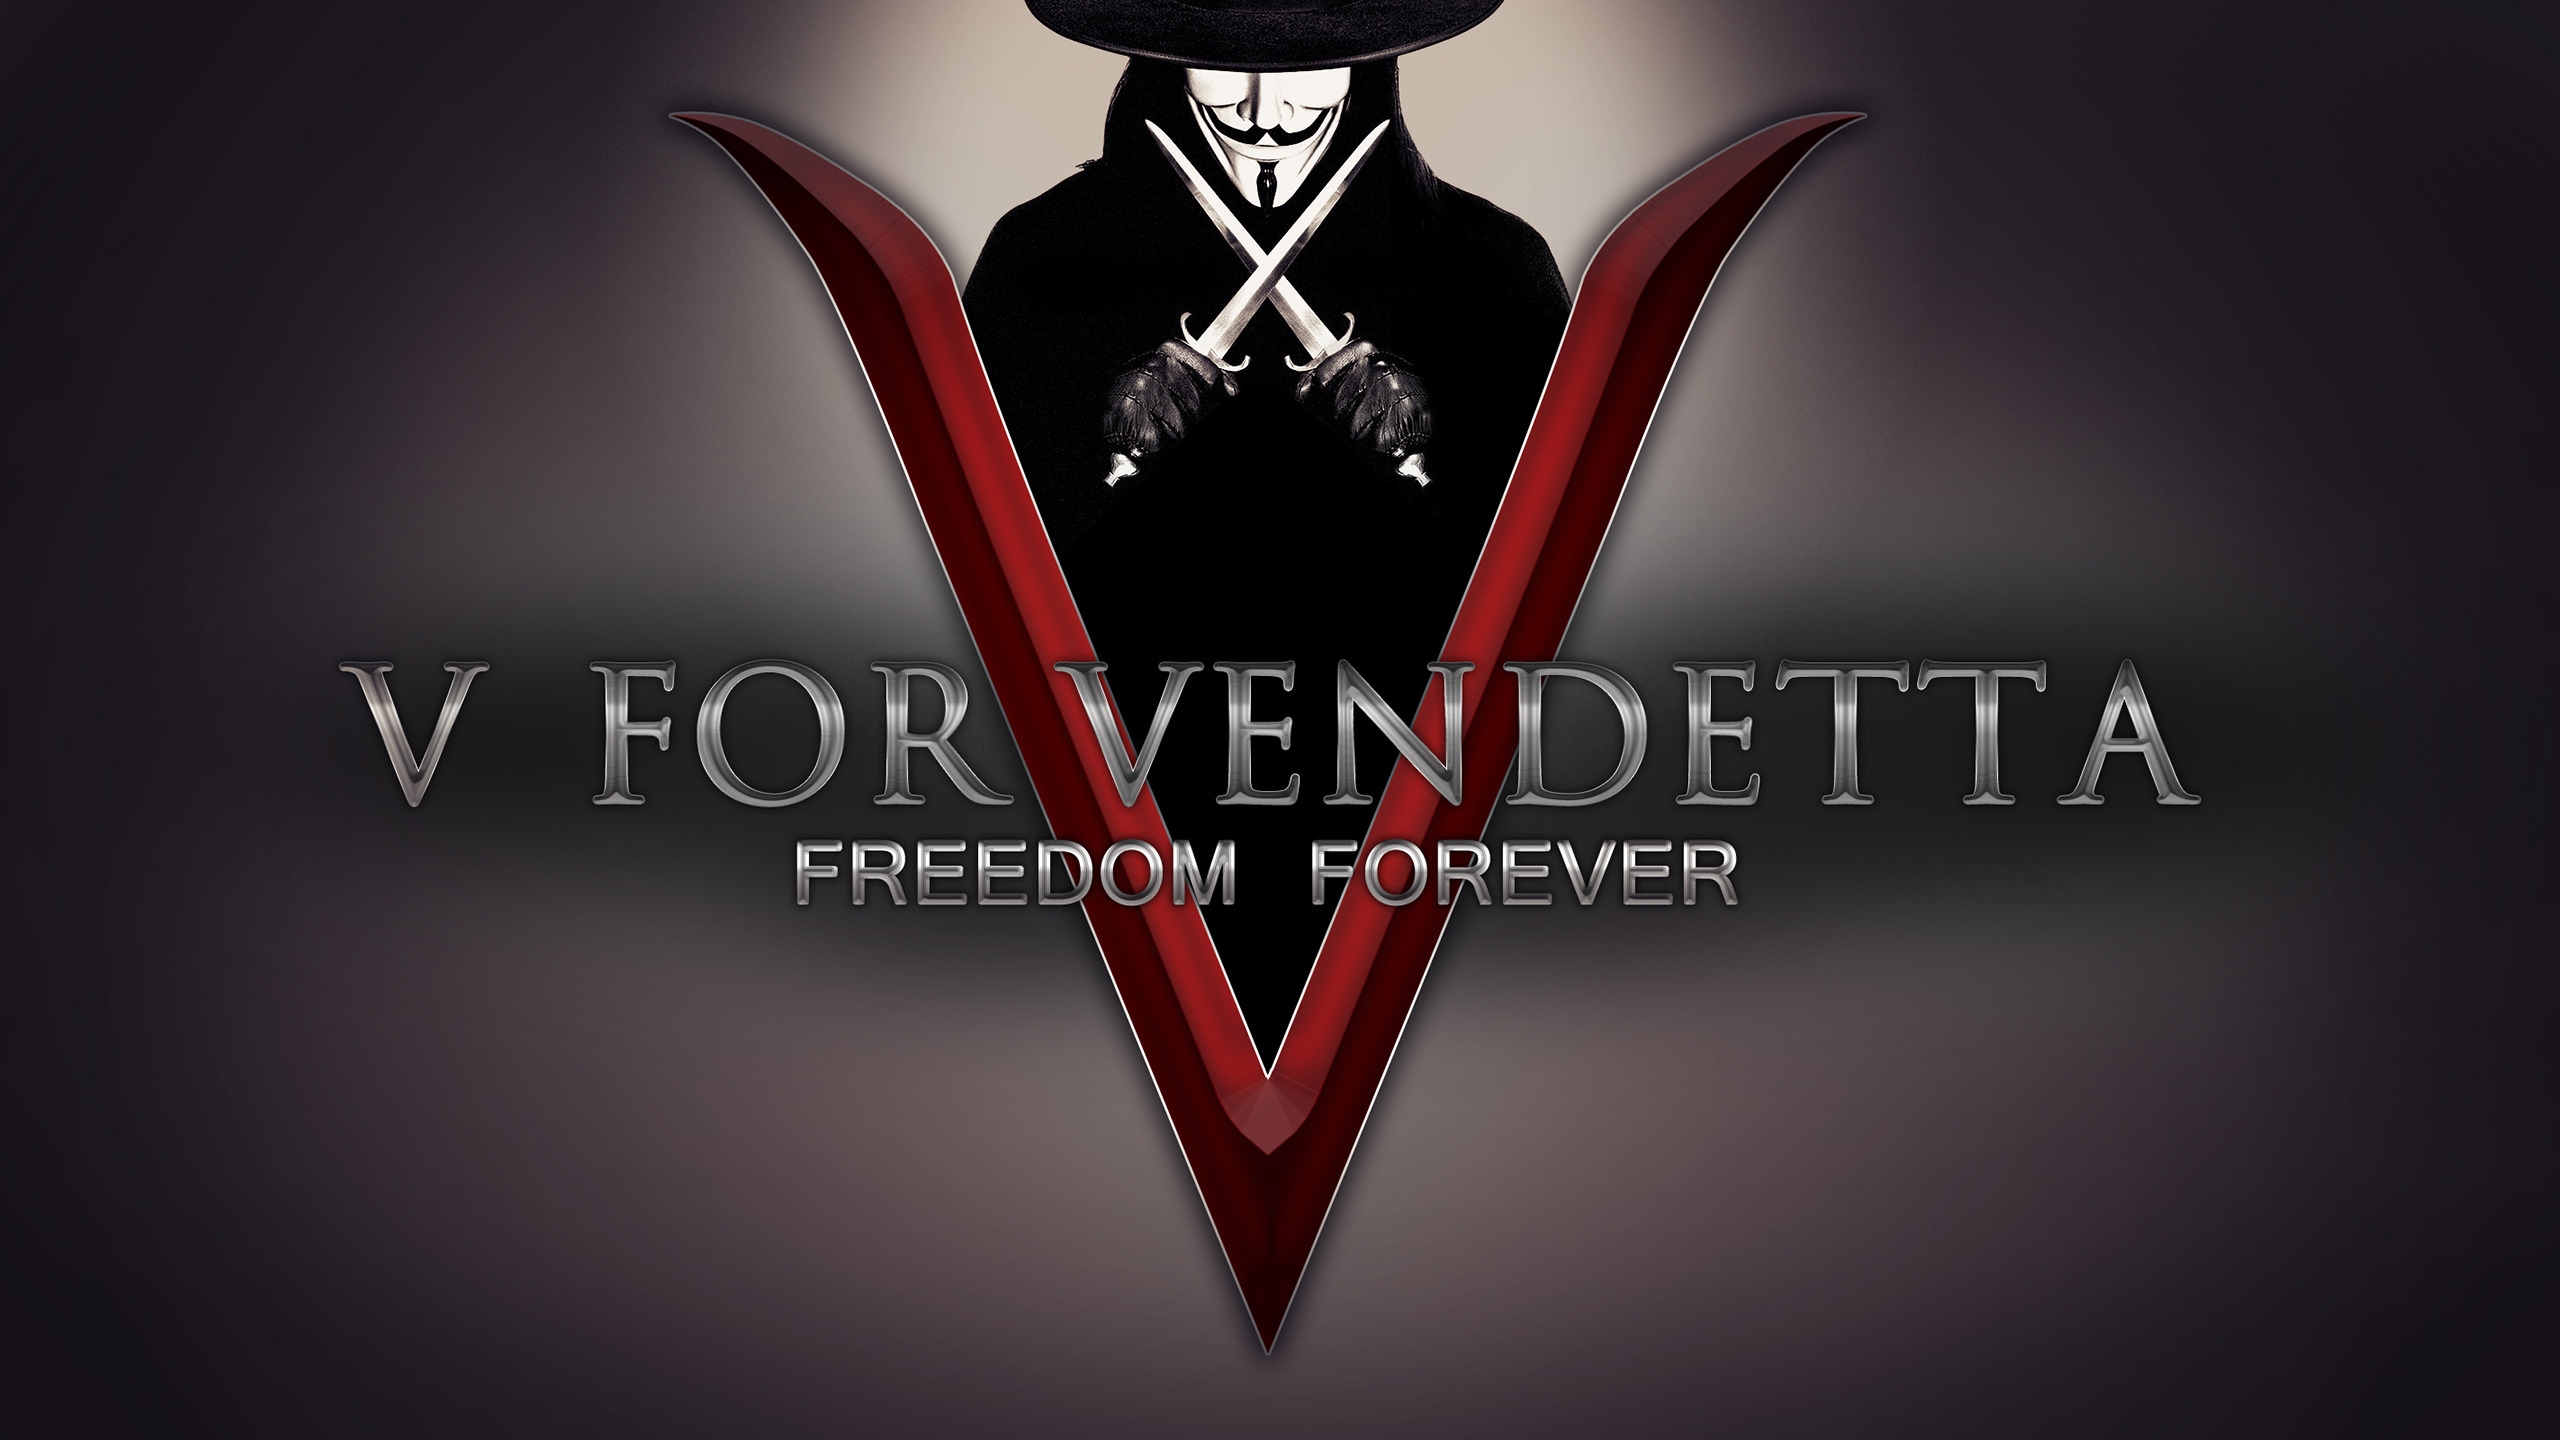 V for Vendetta Freedom Forever for 2560x1440 HDTV resolution